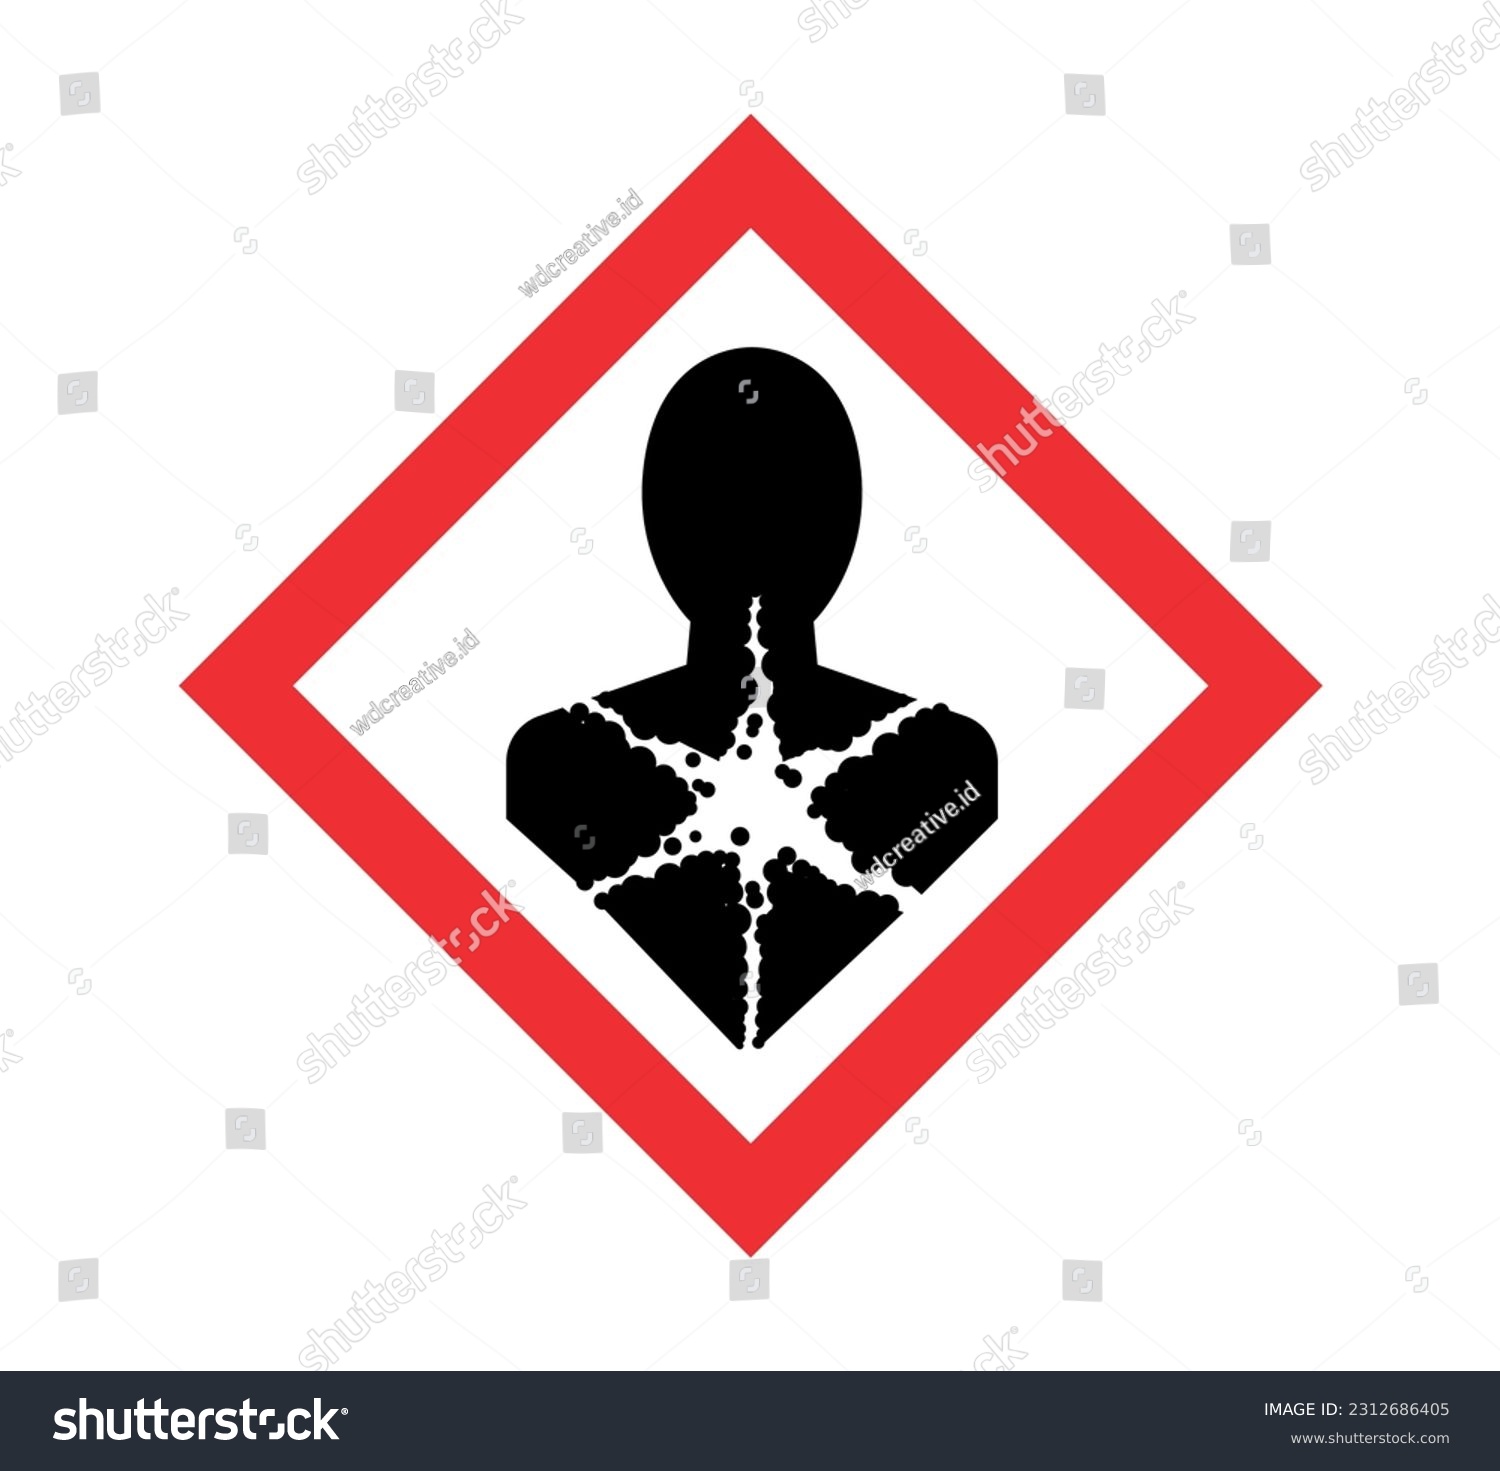 SVG of Simbol yang menjelaskan bahayanya bahan kimia jika terpapar oleh manusia yang bisa menimbulkan efek buruk dalam jangka pendek hingga panjang. svg